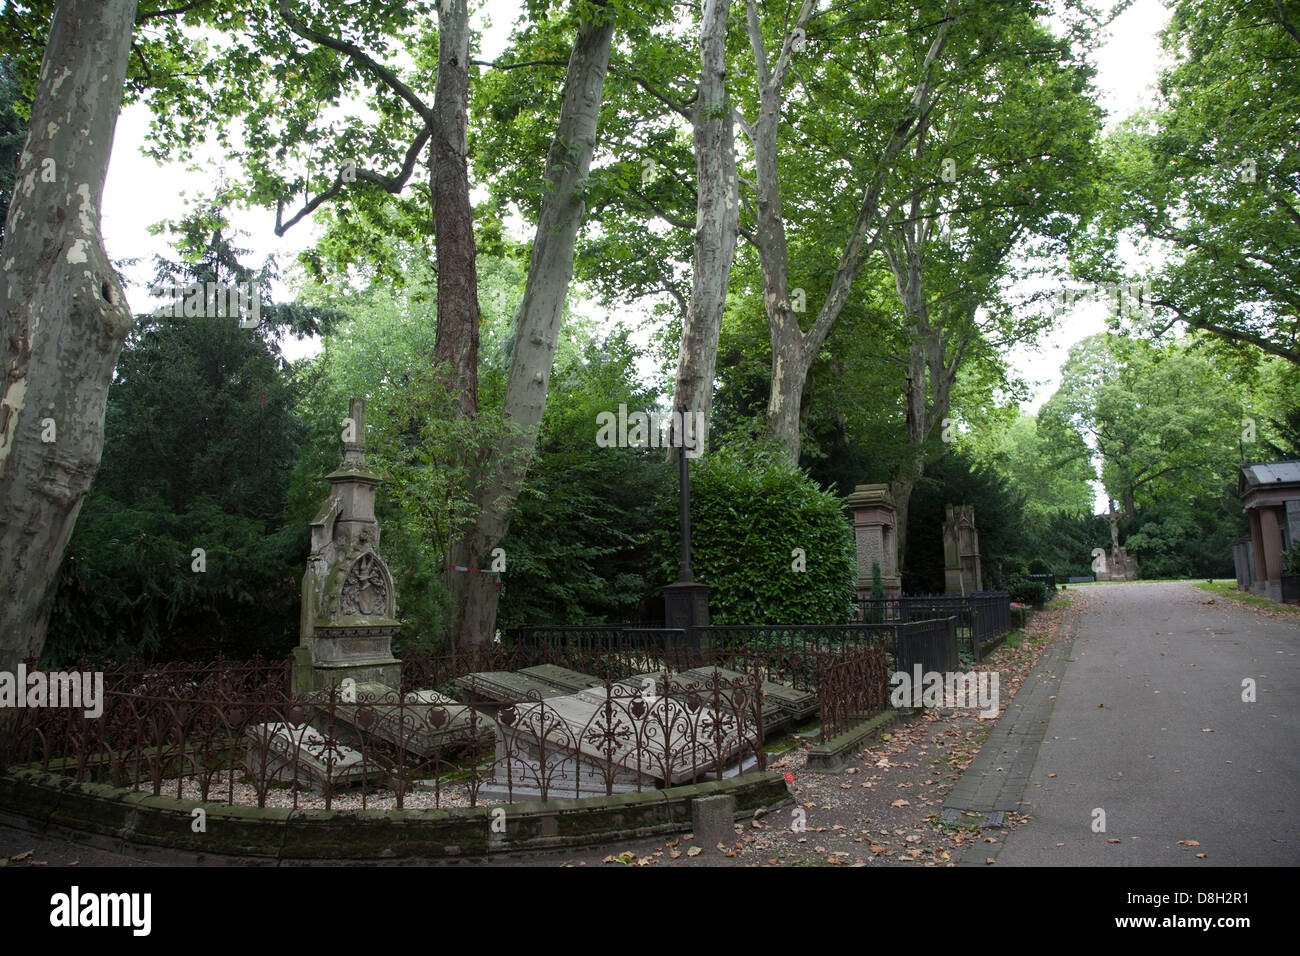 Melaten Friedhof, Melaten Cemetery, Cologne, Germany Stock Photo